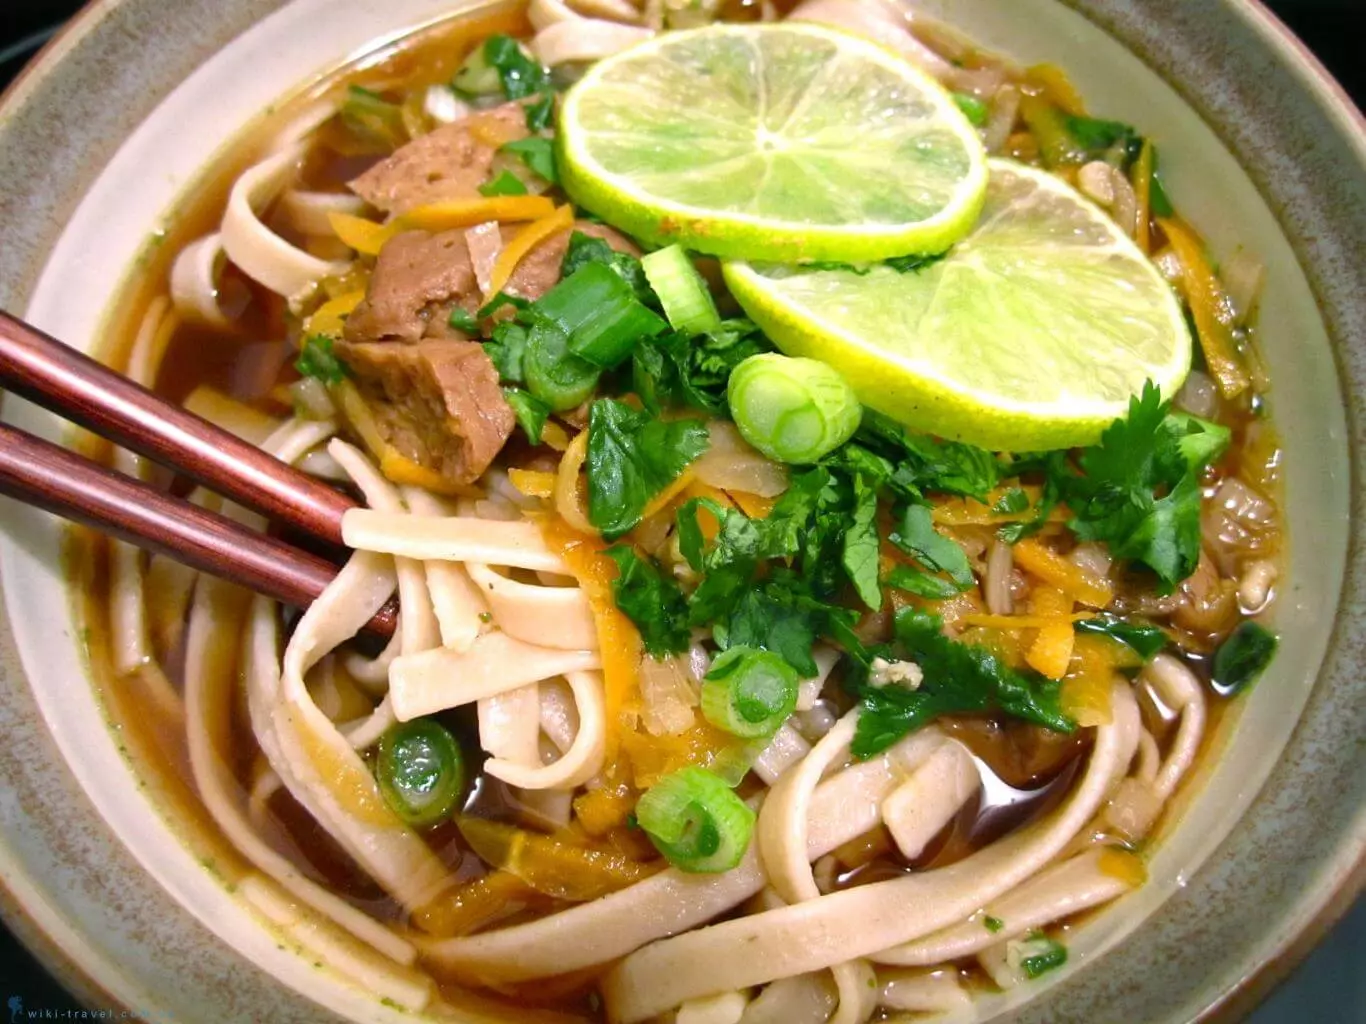 Đây là món ăn thể hiện sự tinh tế trong văn hóa ẩm thực Việt Nam